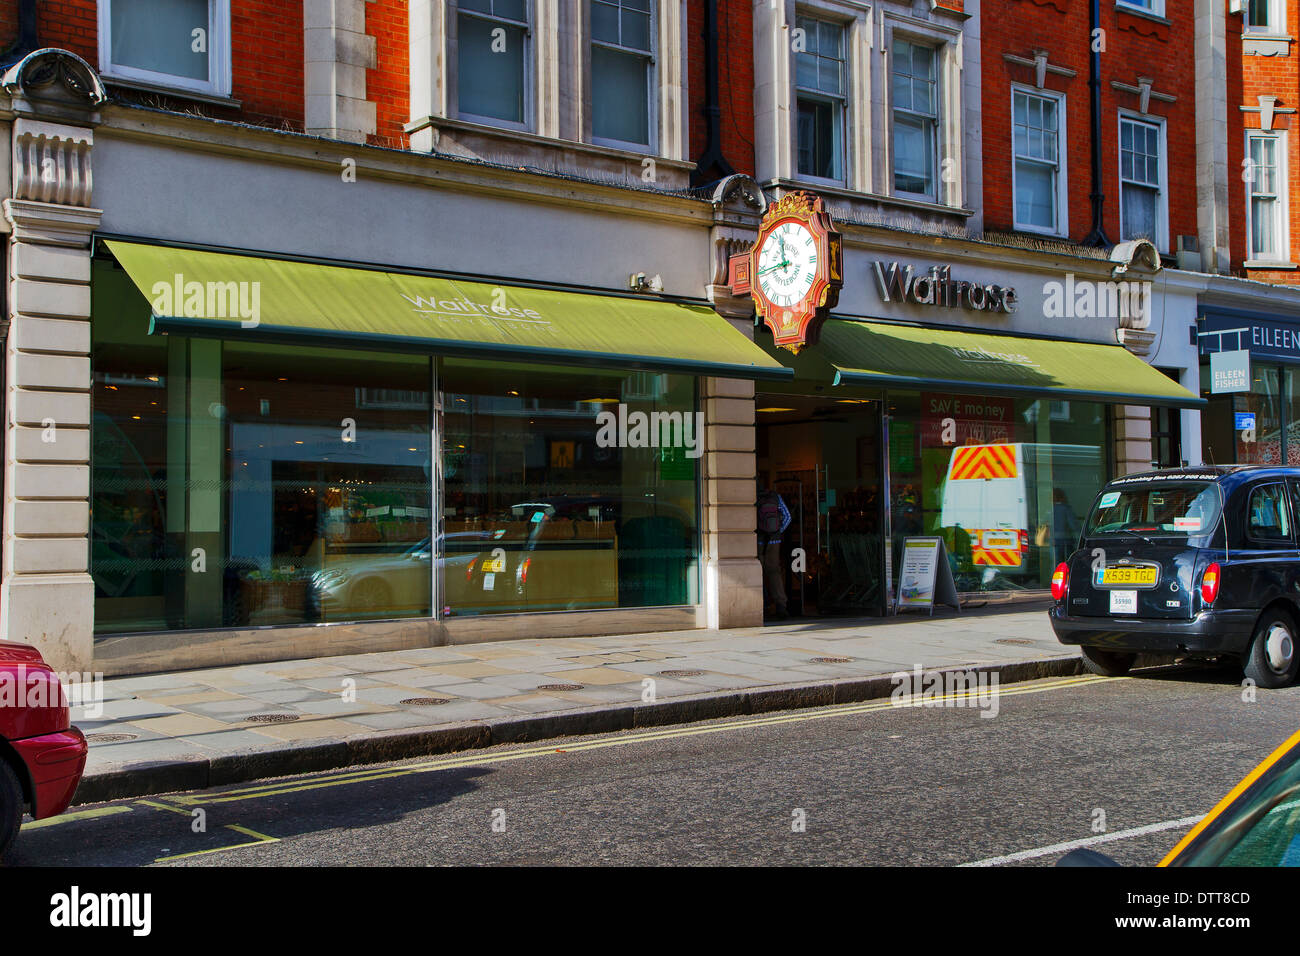 Waitrose Supermarket, Marylebone High Street, London, England, UK, Europe Stock Photo